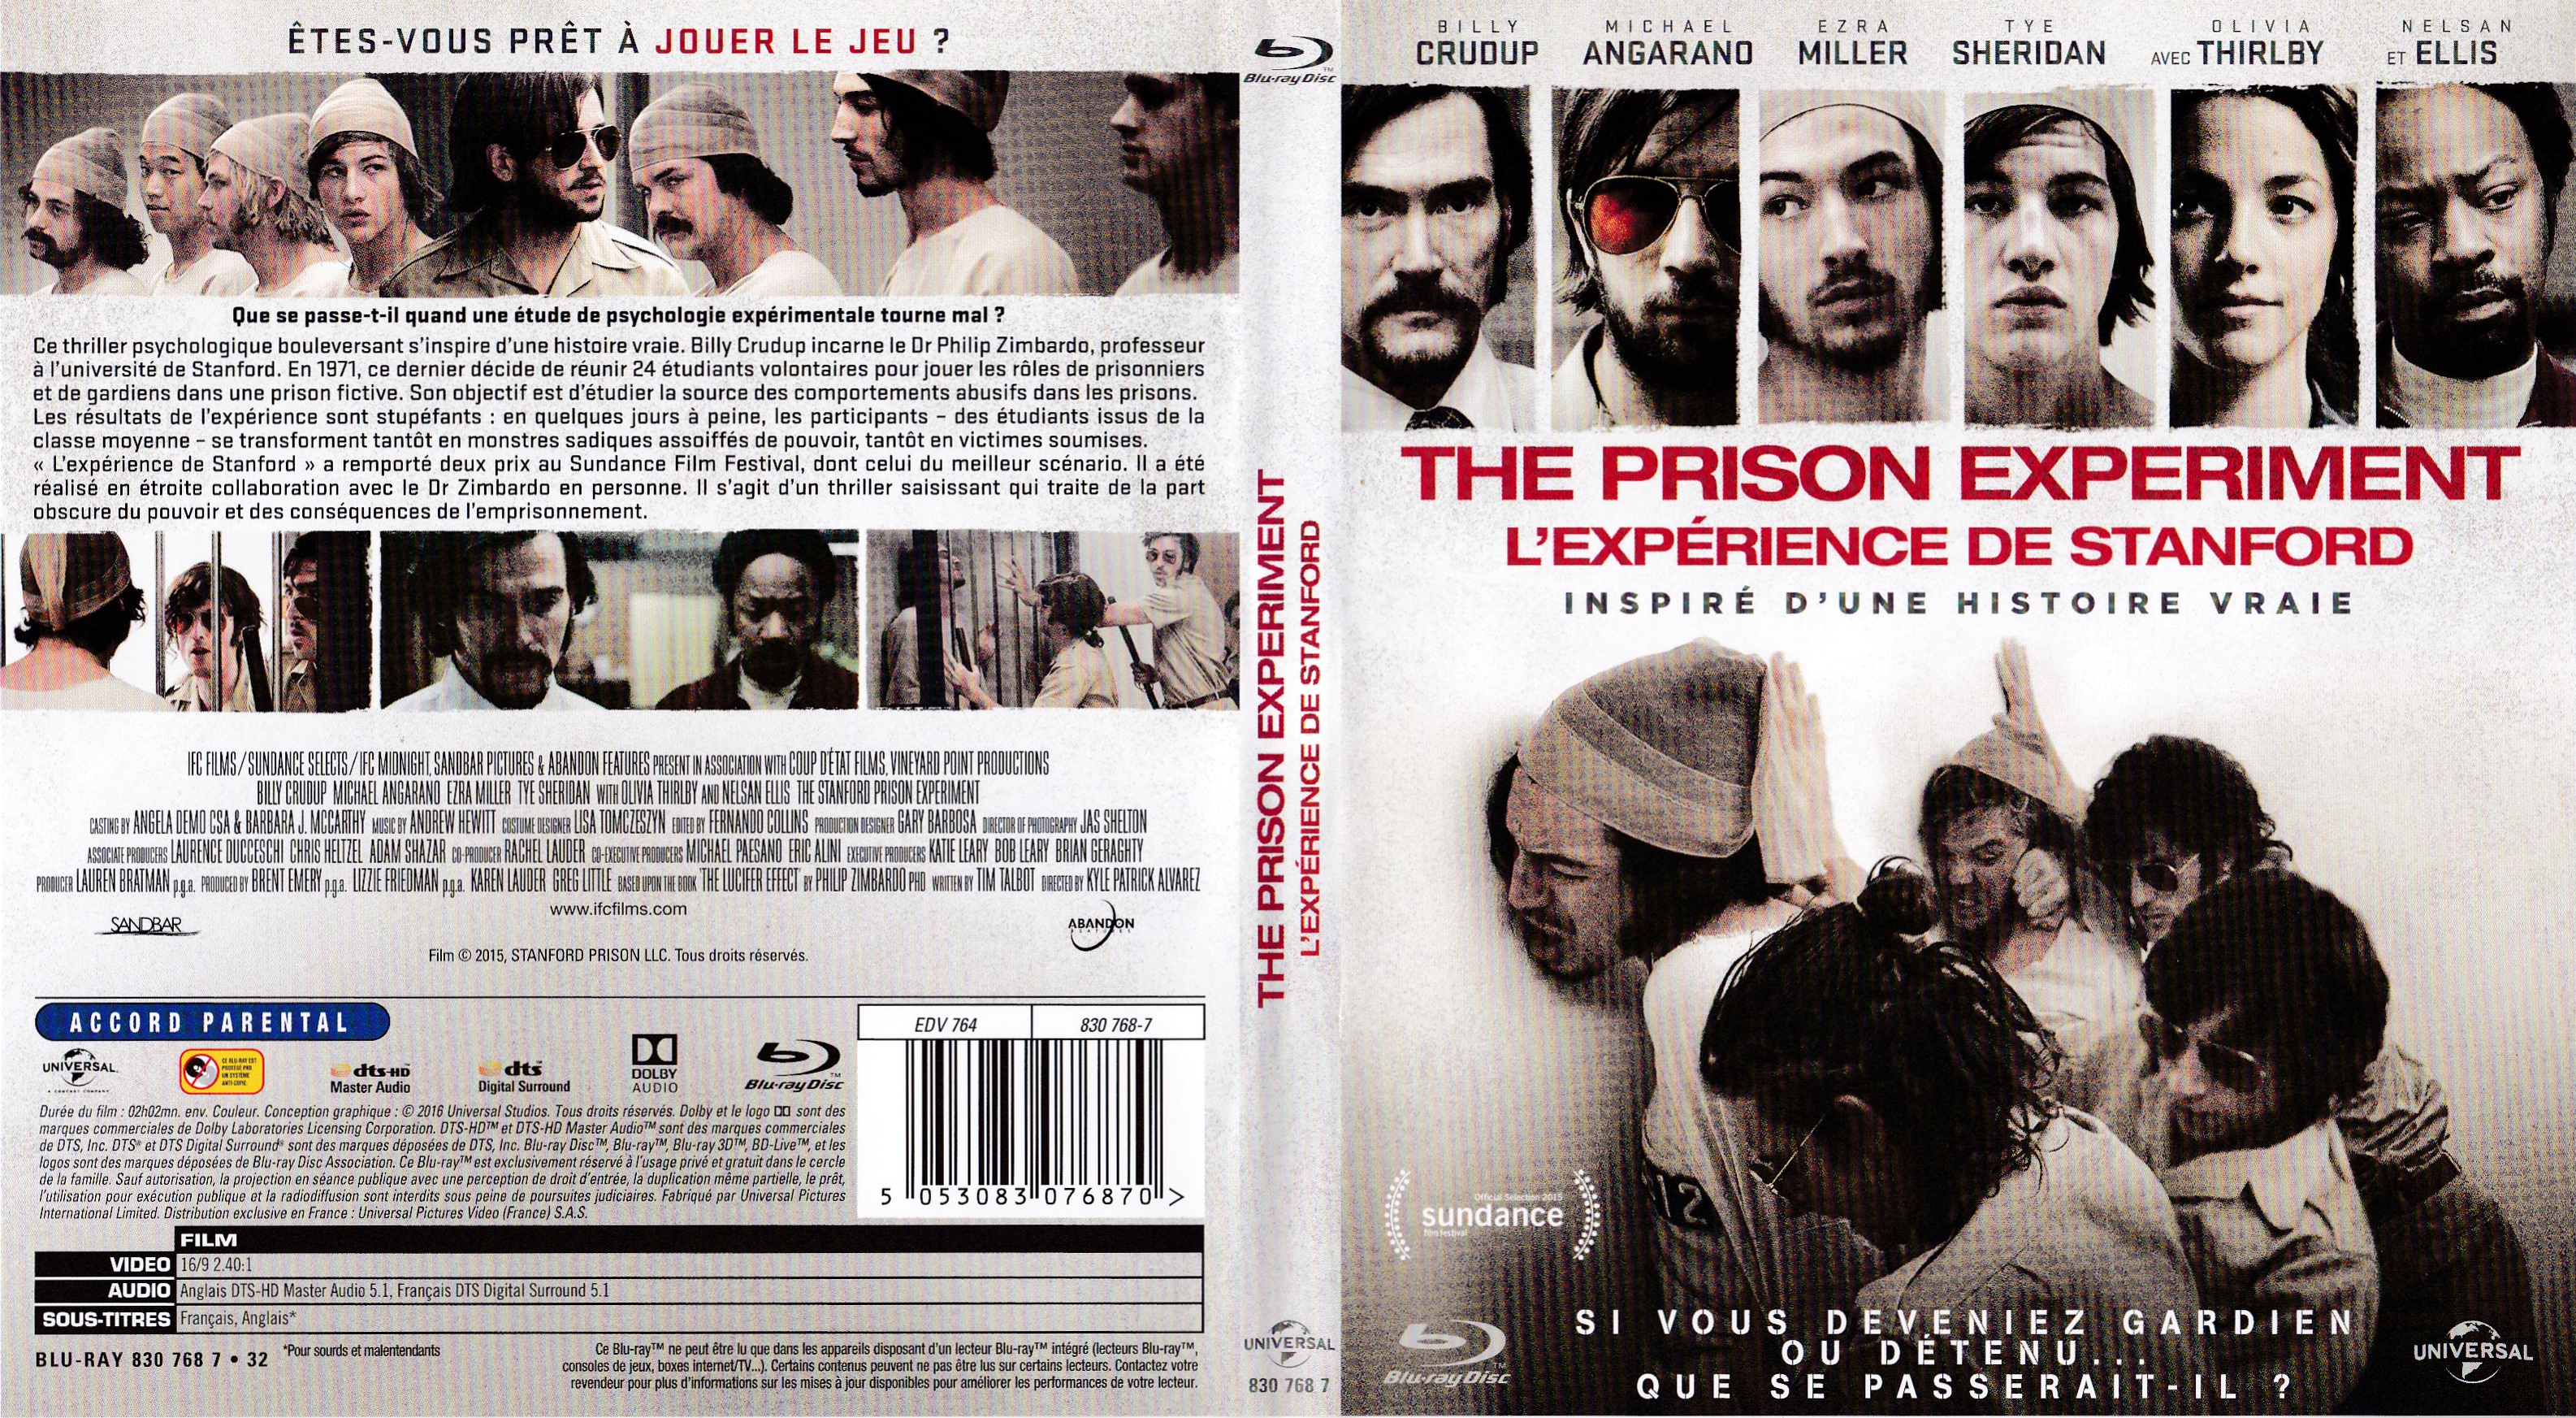 Jaquette DVD The prison experiment - L